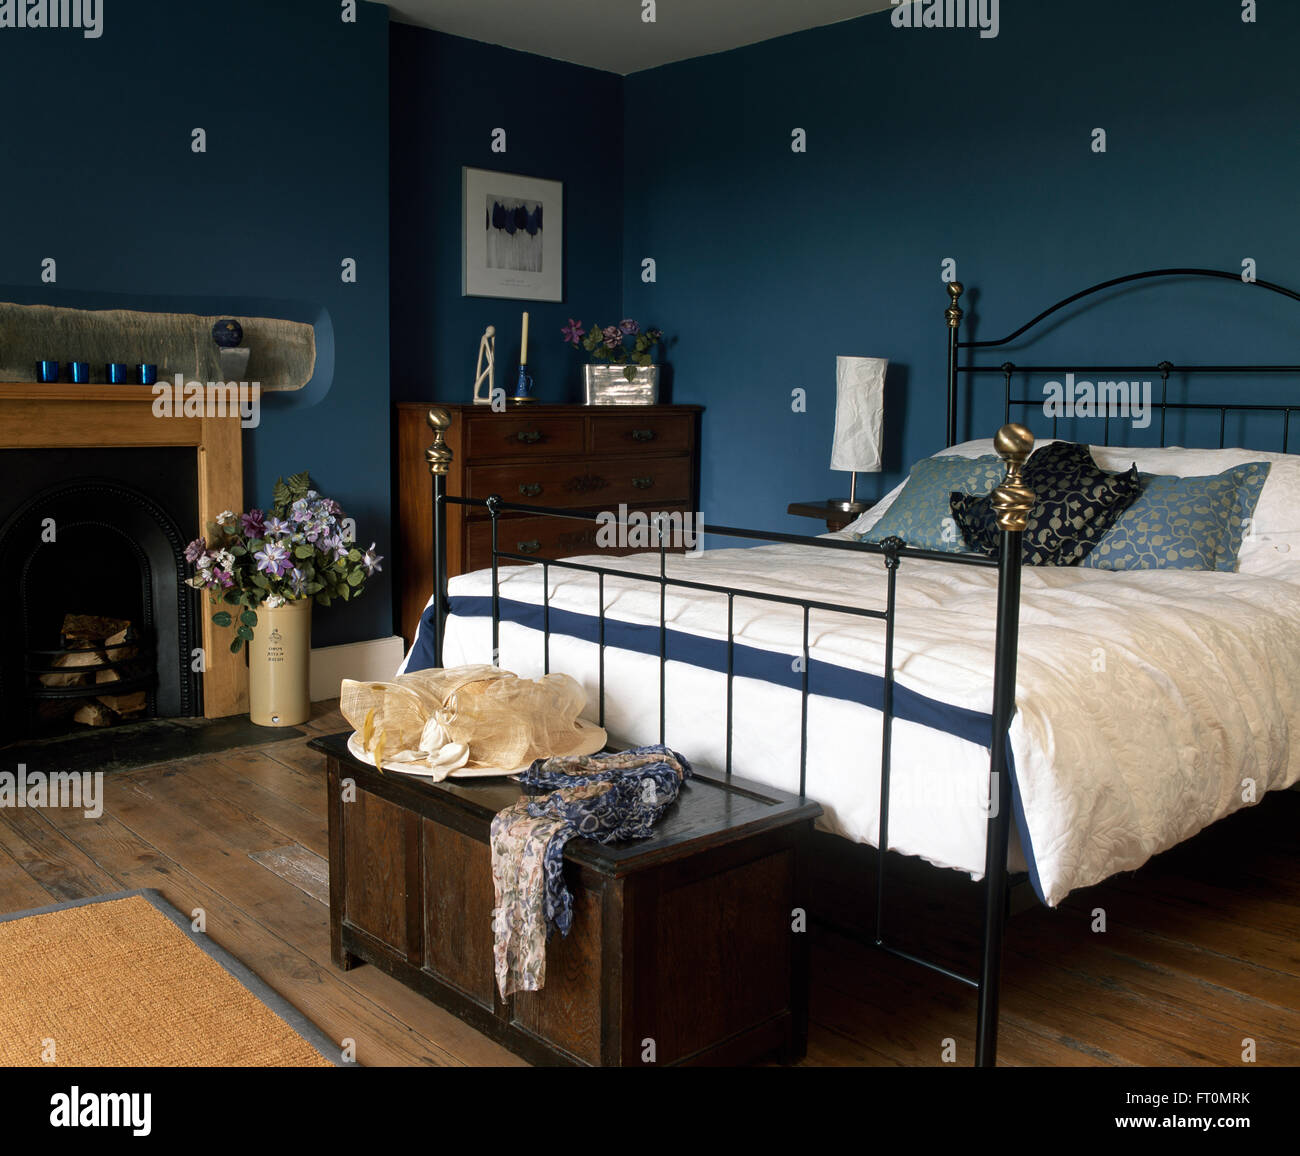 Lit en fer forgé noir avec couette blanche dans une chambre bleue avec un  chapeau sur un vintage coffre au pied du lit Photo Stock - Alamy